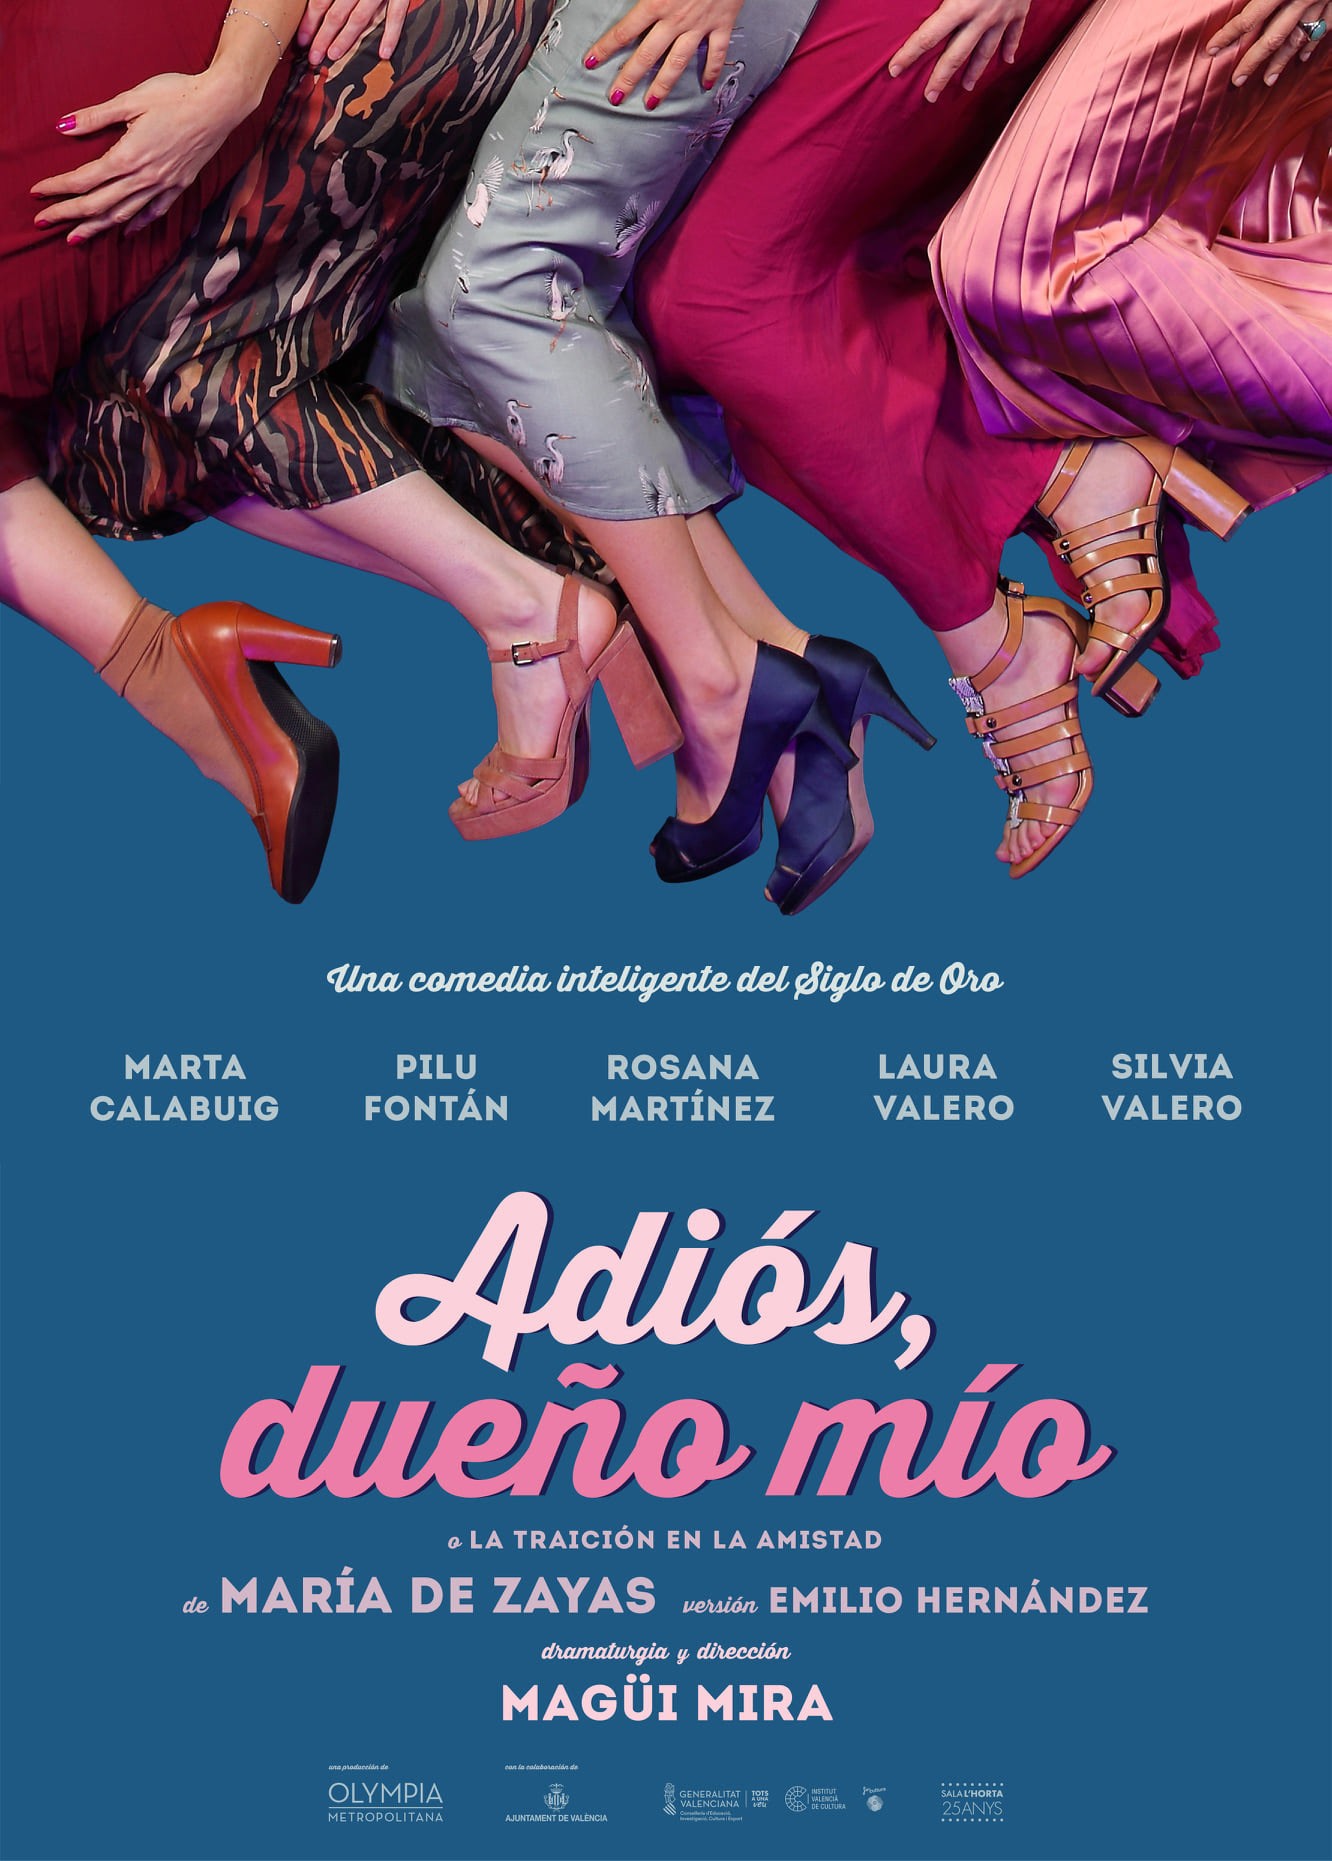 El Teatre Talia estrena nueva producción dirigida por MAGUI MIRA “ADIÓS, DUEÑO MÍO”